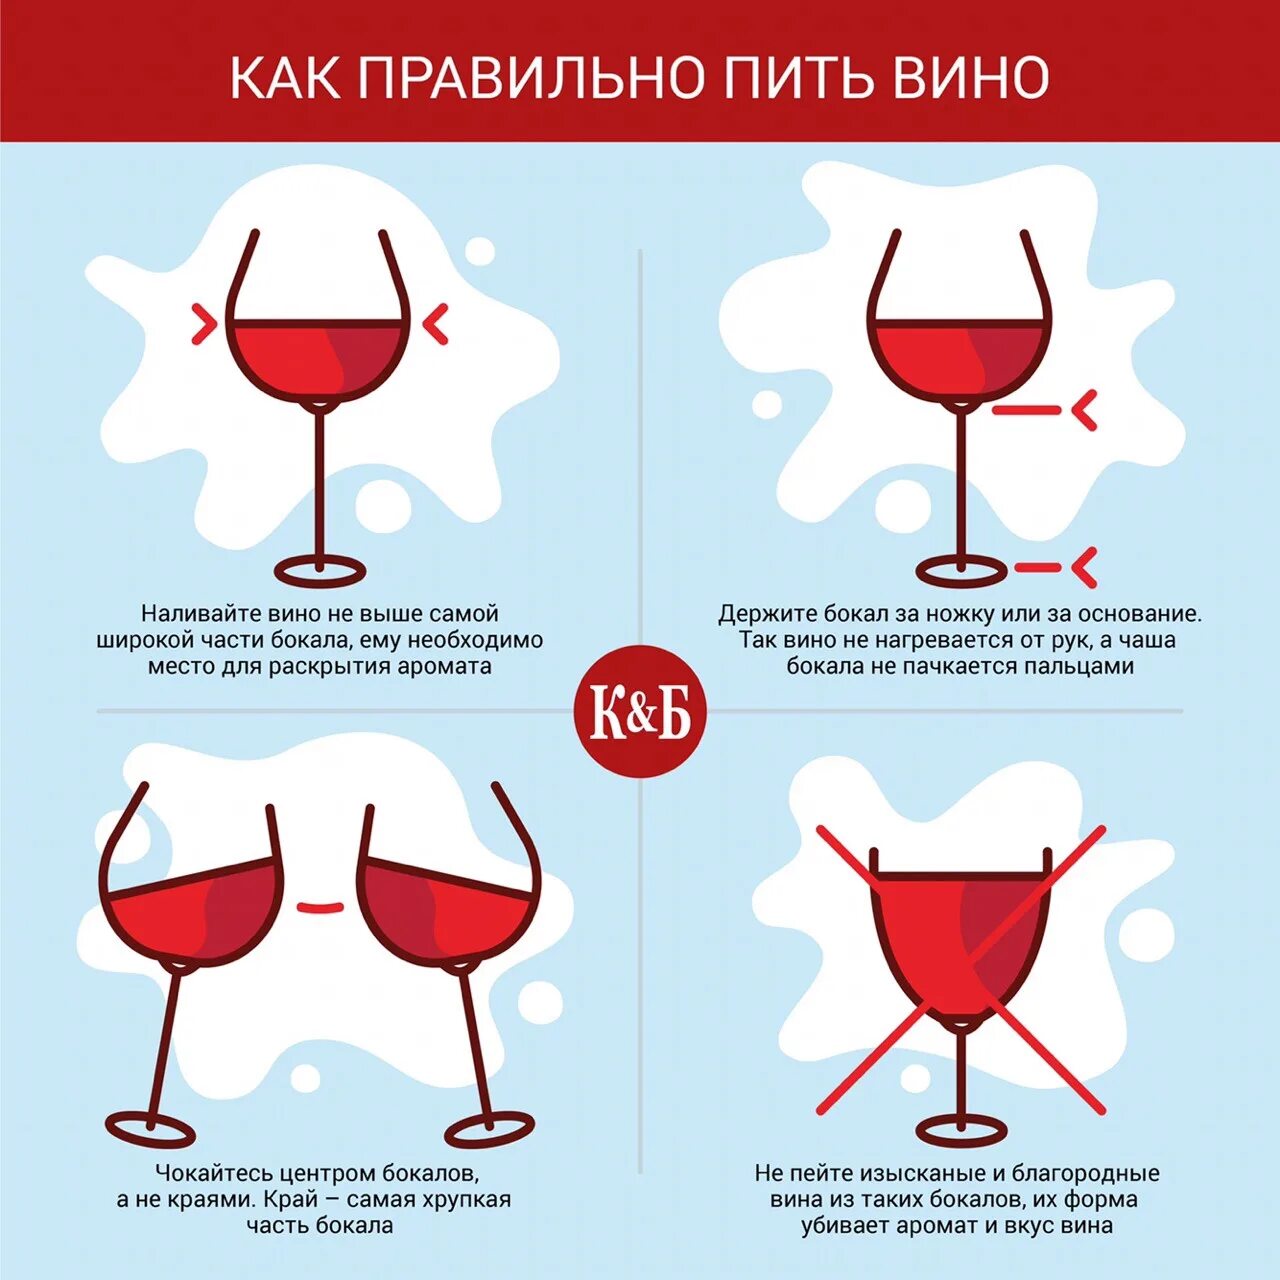 Зачем пить вино. Форма бокала для красного вина. Правила питья вина. Правильные бокалы по вино. Бокалы для вина по этикету.